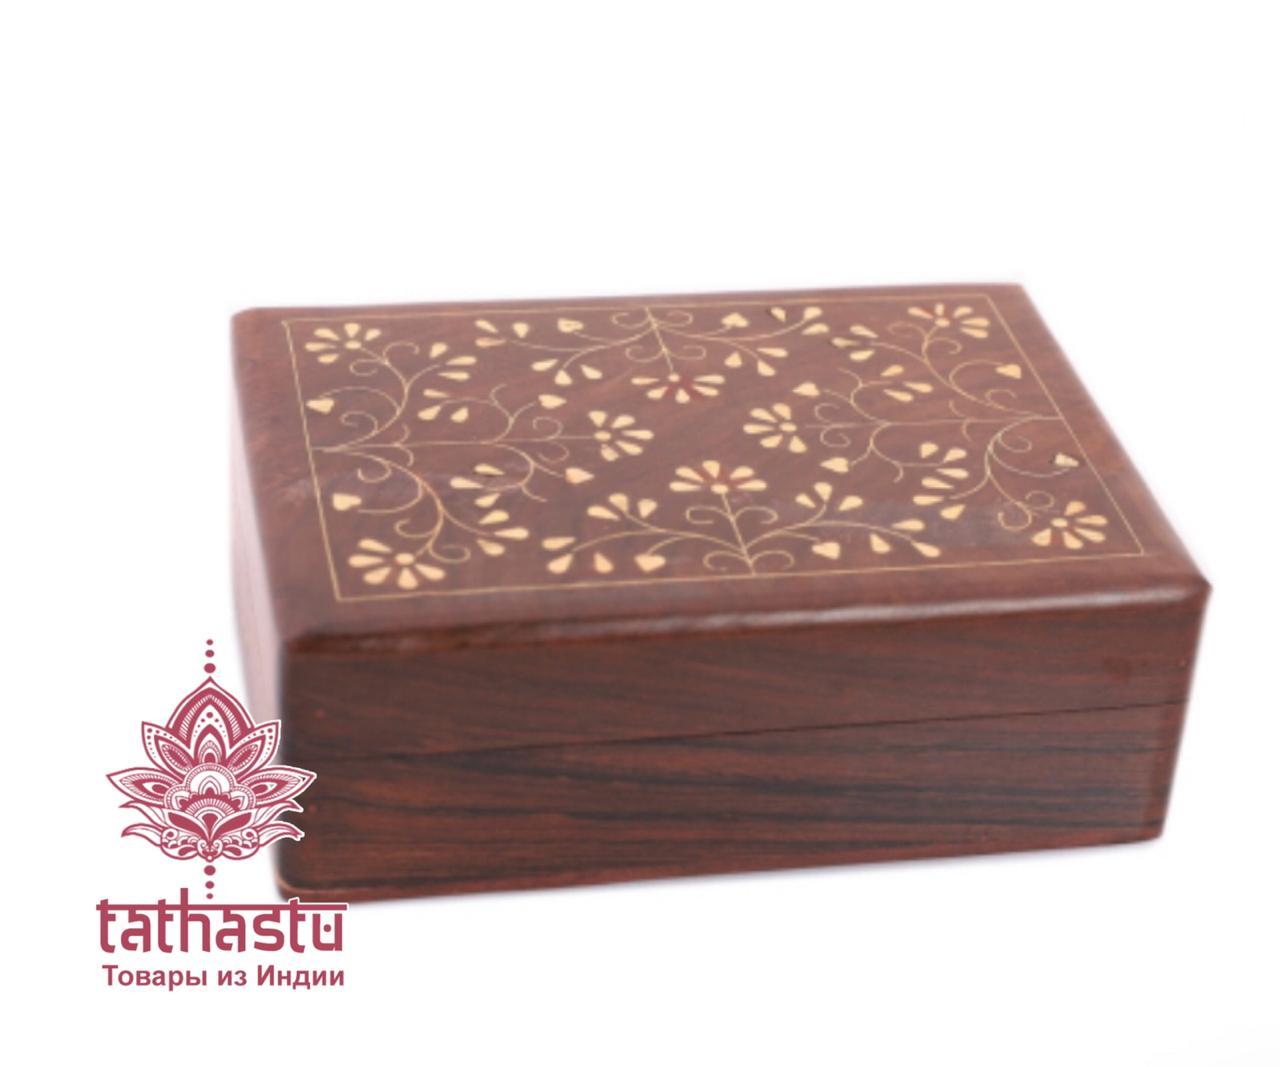 Tathastu Благородная деревянная шкатулка. Tathastu товары и индии